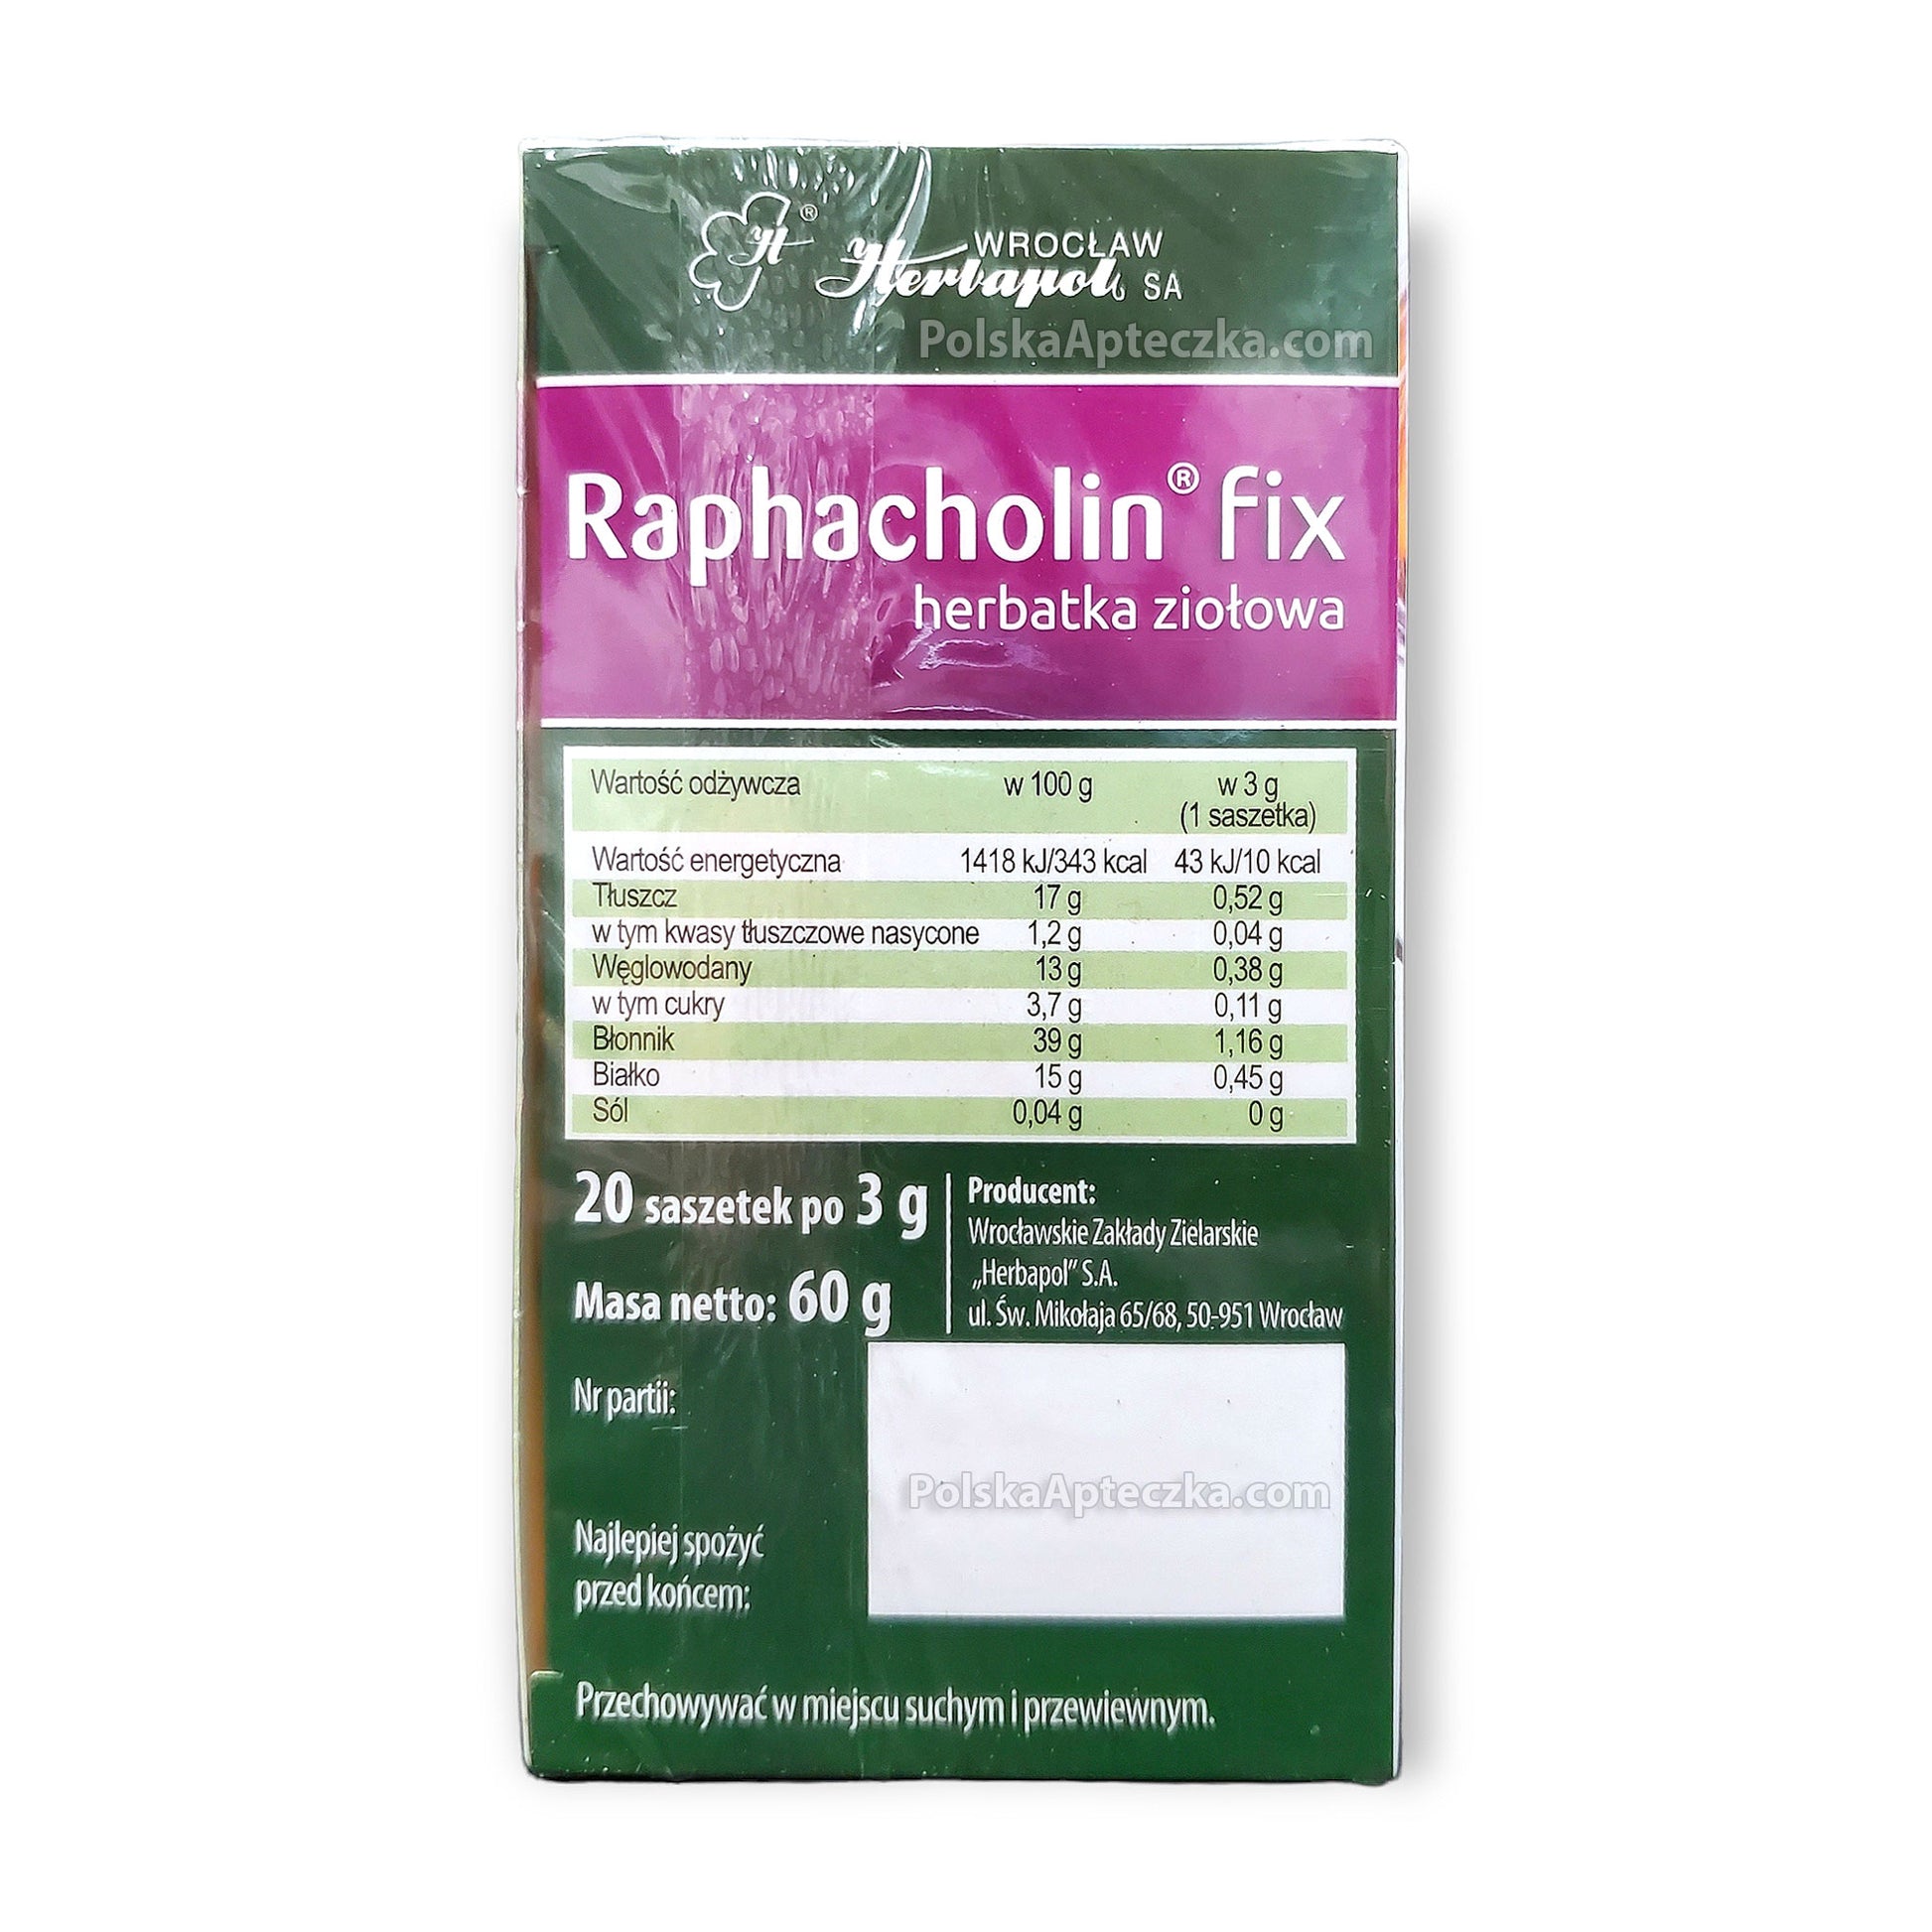 Raphacholin Fix herbatka ziołowa na dobre trawienie